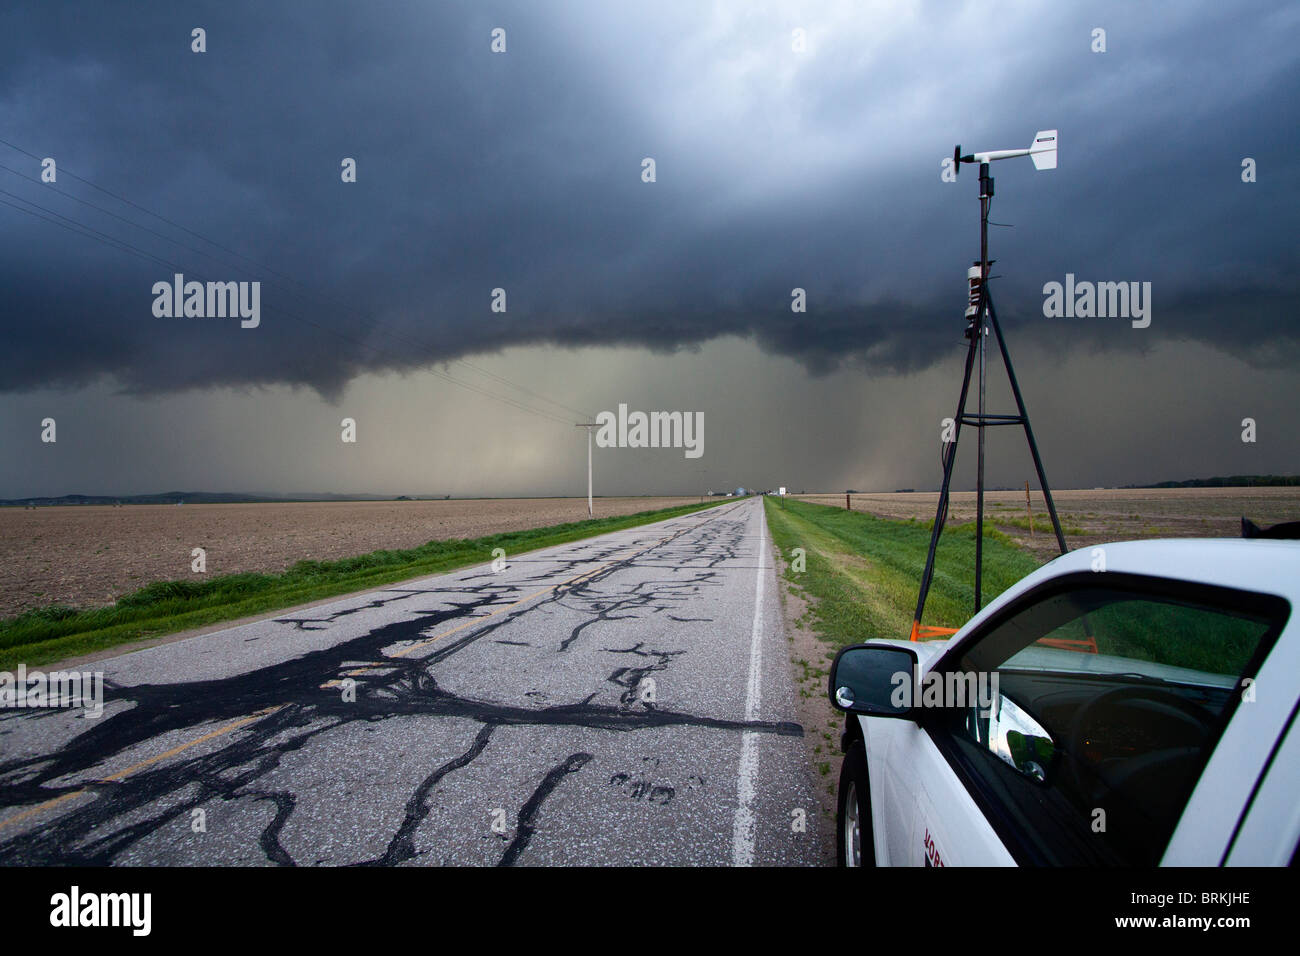 Un storm chaser attend le long de la route et regarde un violent orage dans les régions rurales de New York, le 24 mai 2010. Banque D'Images